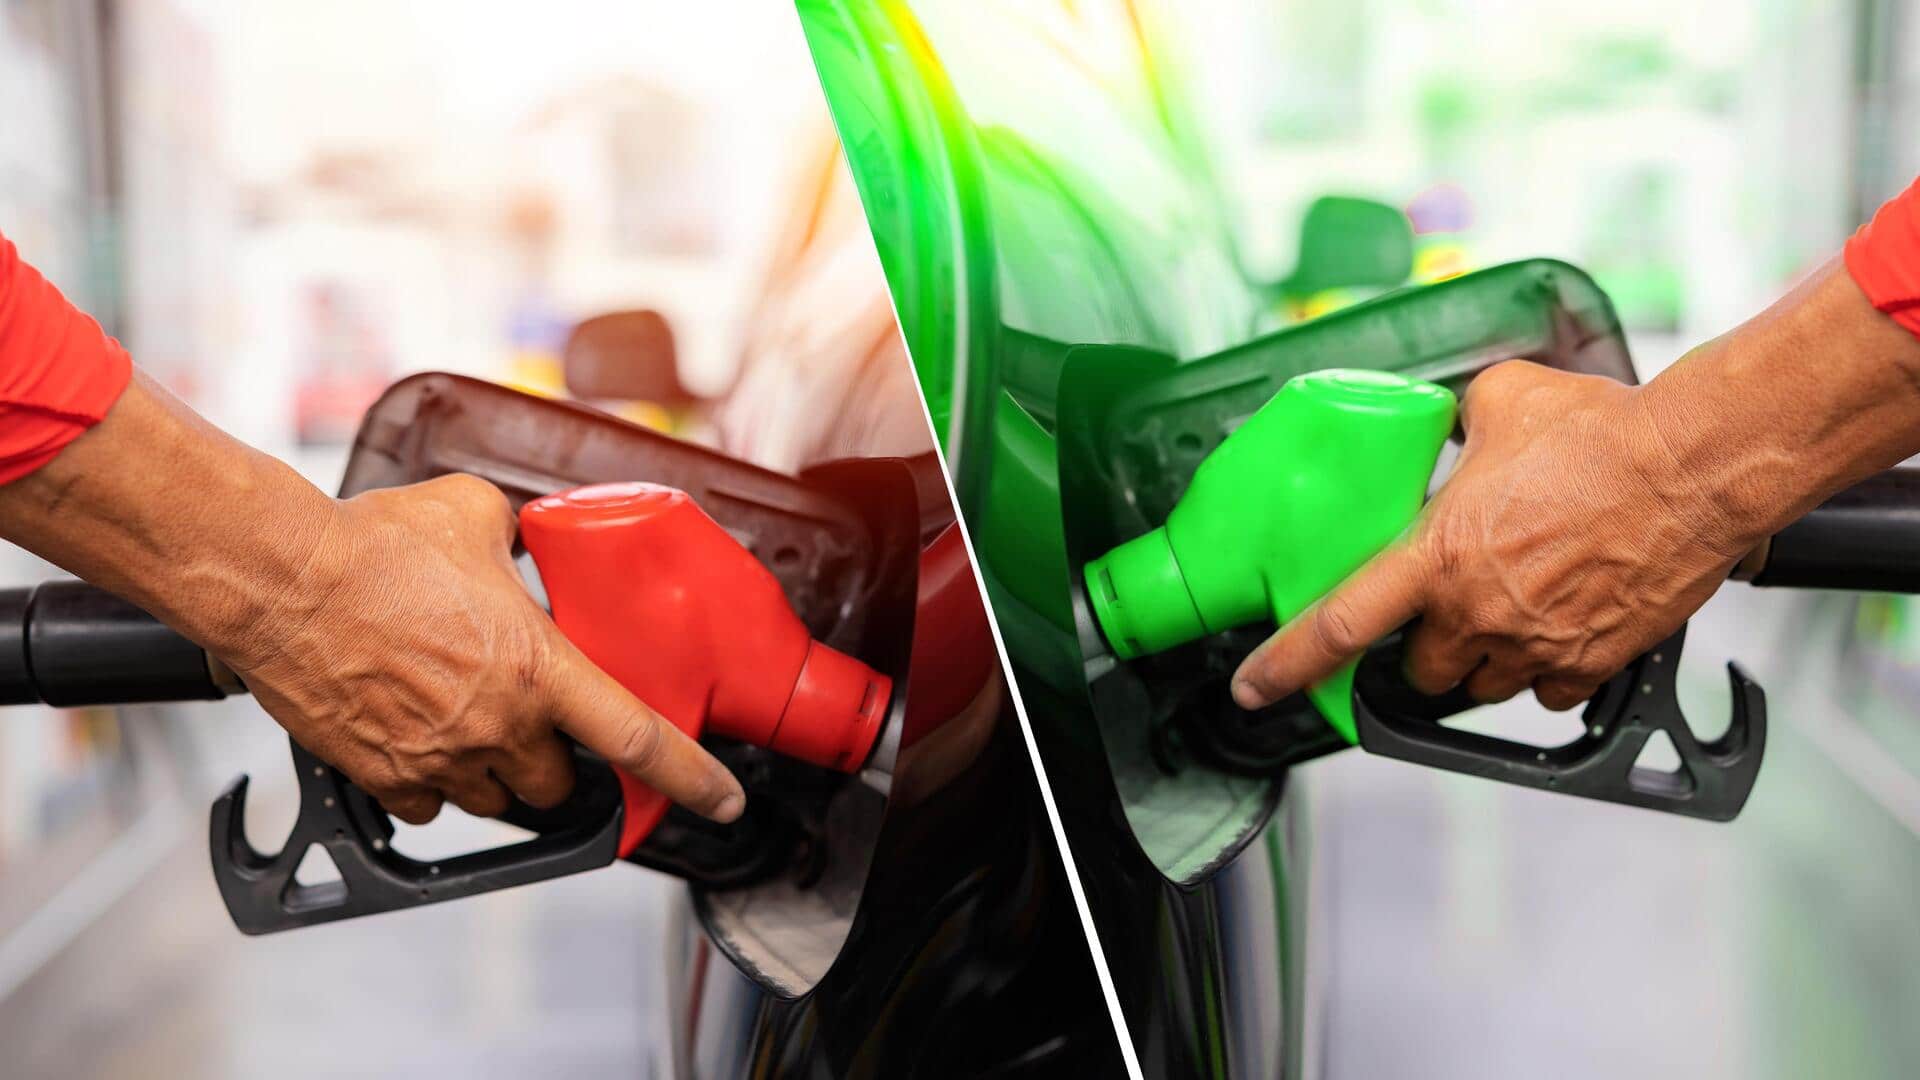 प्रीमियम या साधारण, जानिए आपकी गाड़ी के लिए कौन-सा पेट्रोल है बेहतर